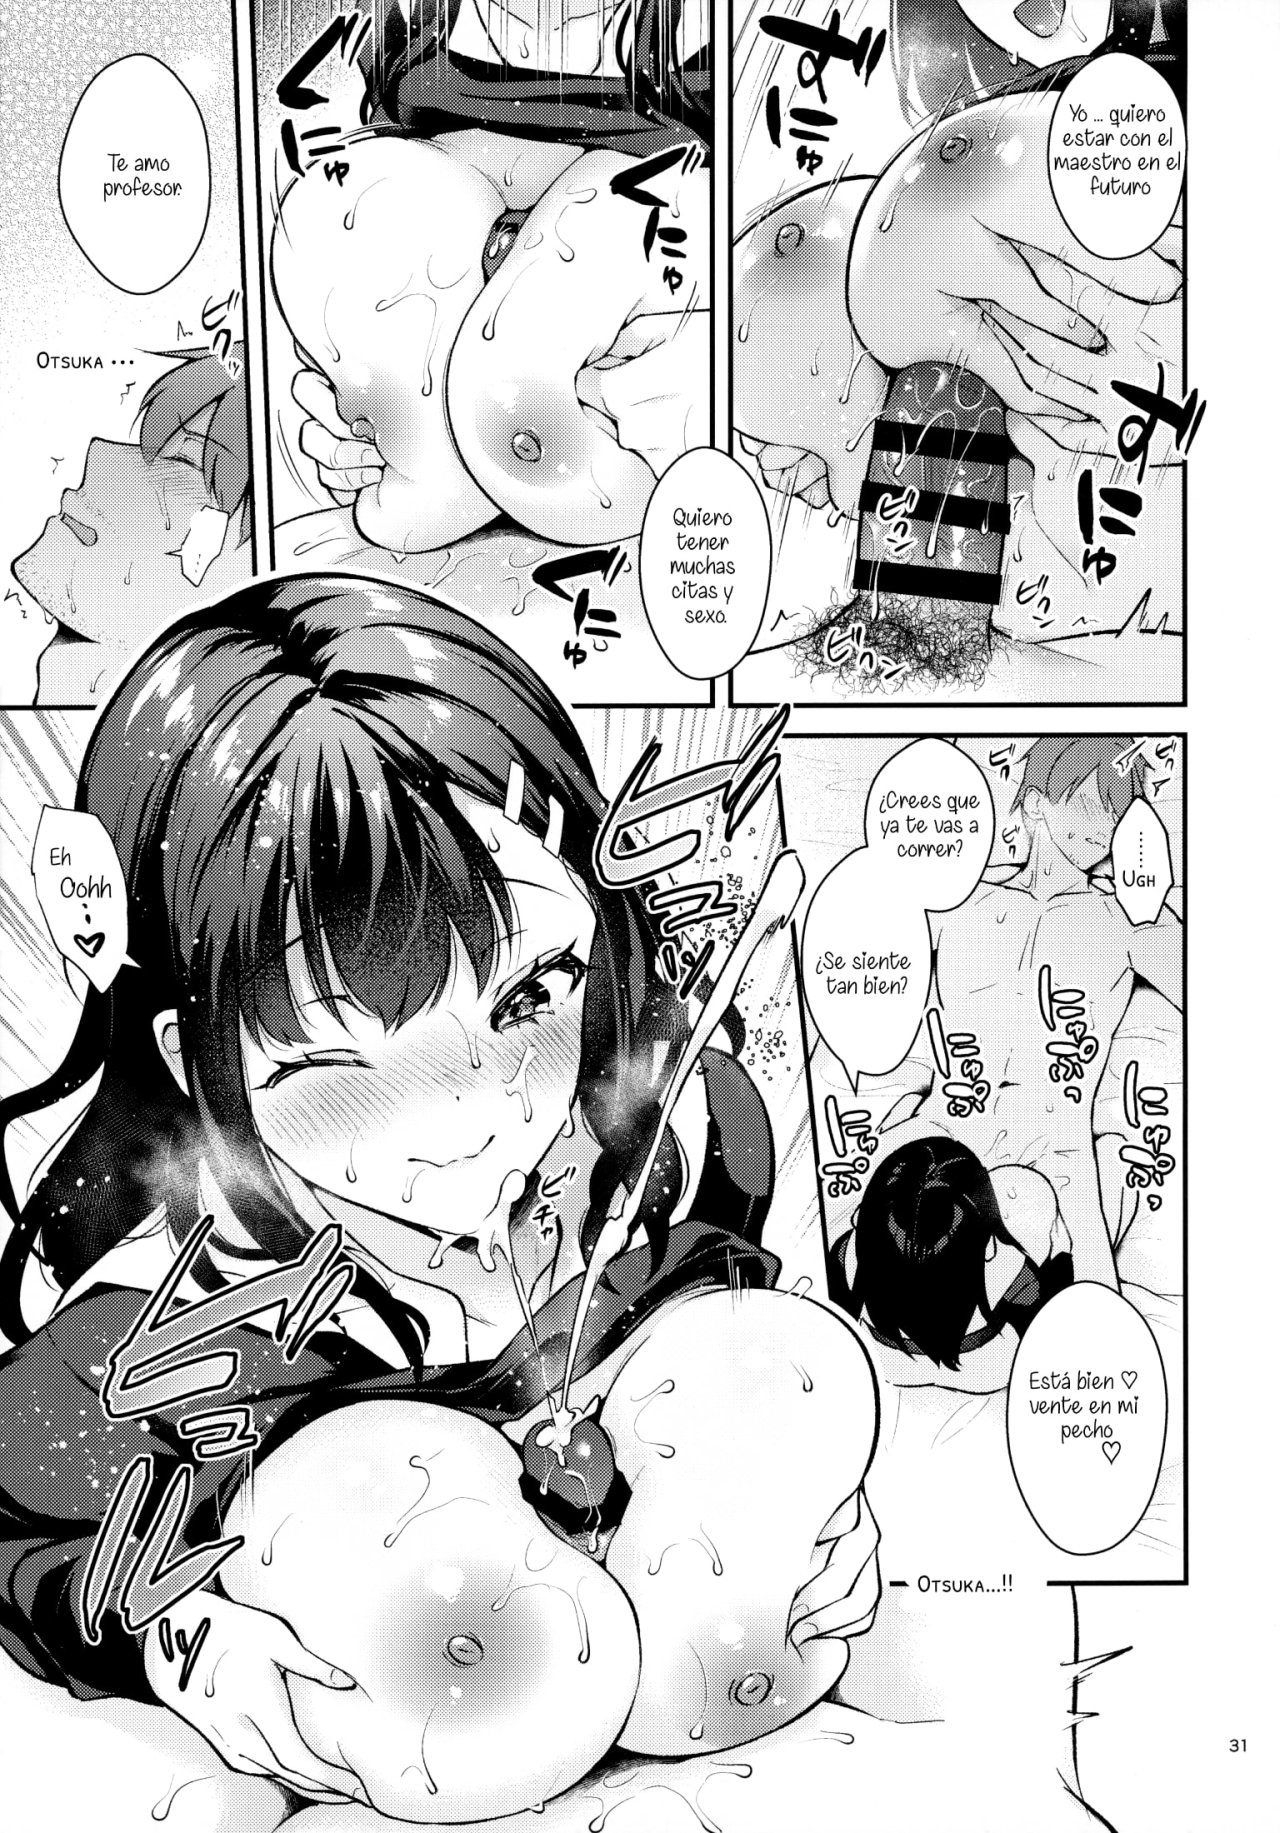 Sunshower-JK Miyako no Valentine Manga 3 - 29